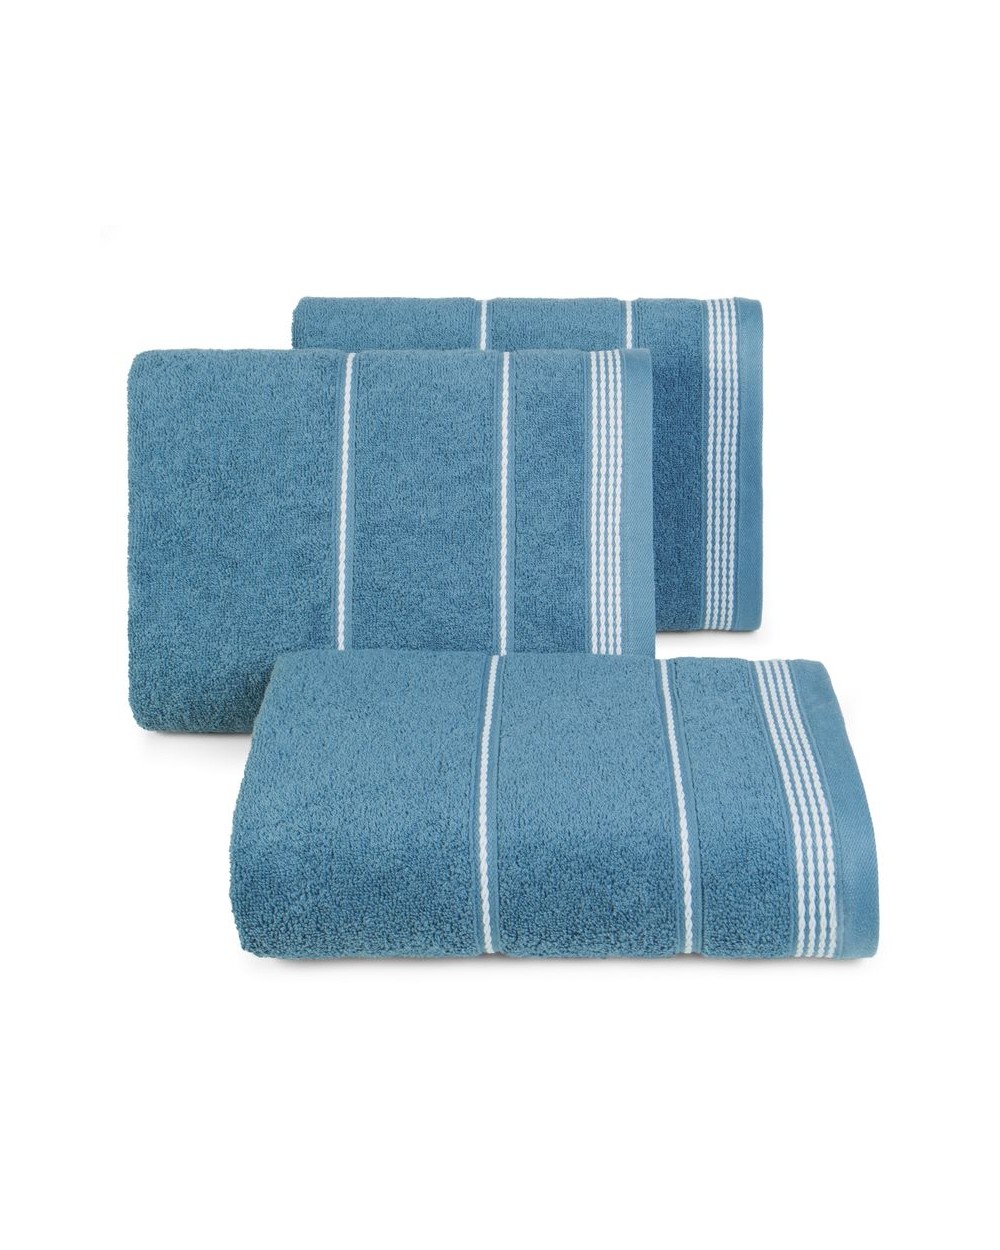 Ręcznik bawełna 70x140 Mira ciemnoniebieski